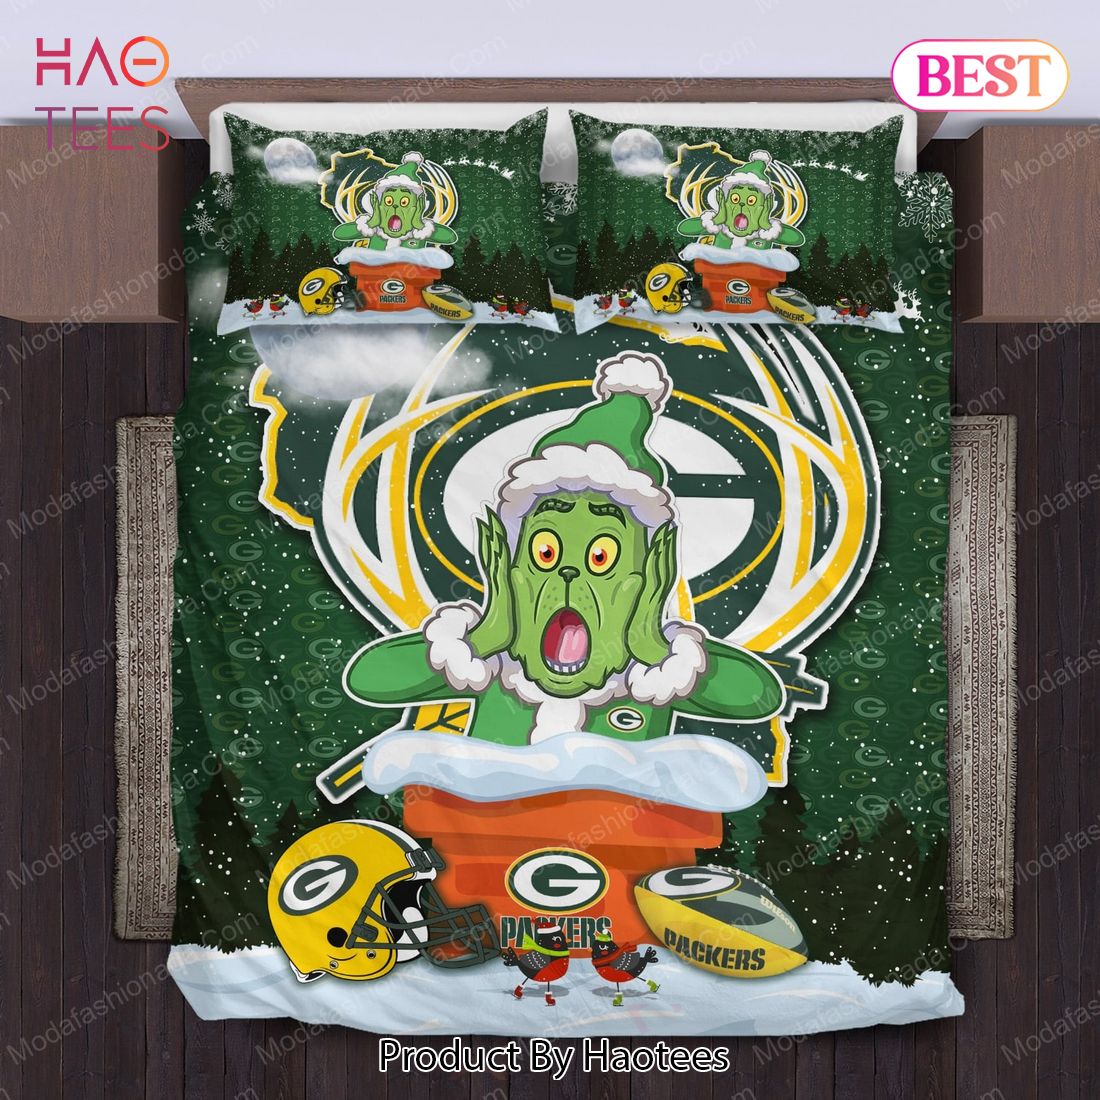 Buy The Grinch NFL Green Bay Packers Christmas Bedding Sets Bed Sets, Bedroom Sets, Comforter Sets, Duvet Cover, Bedspread